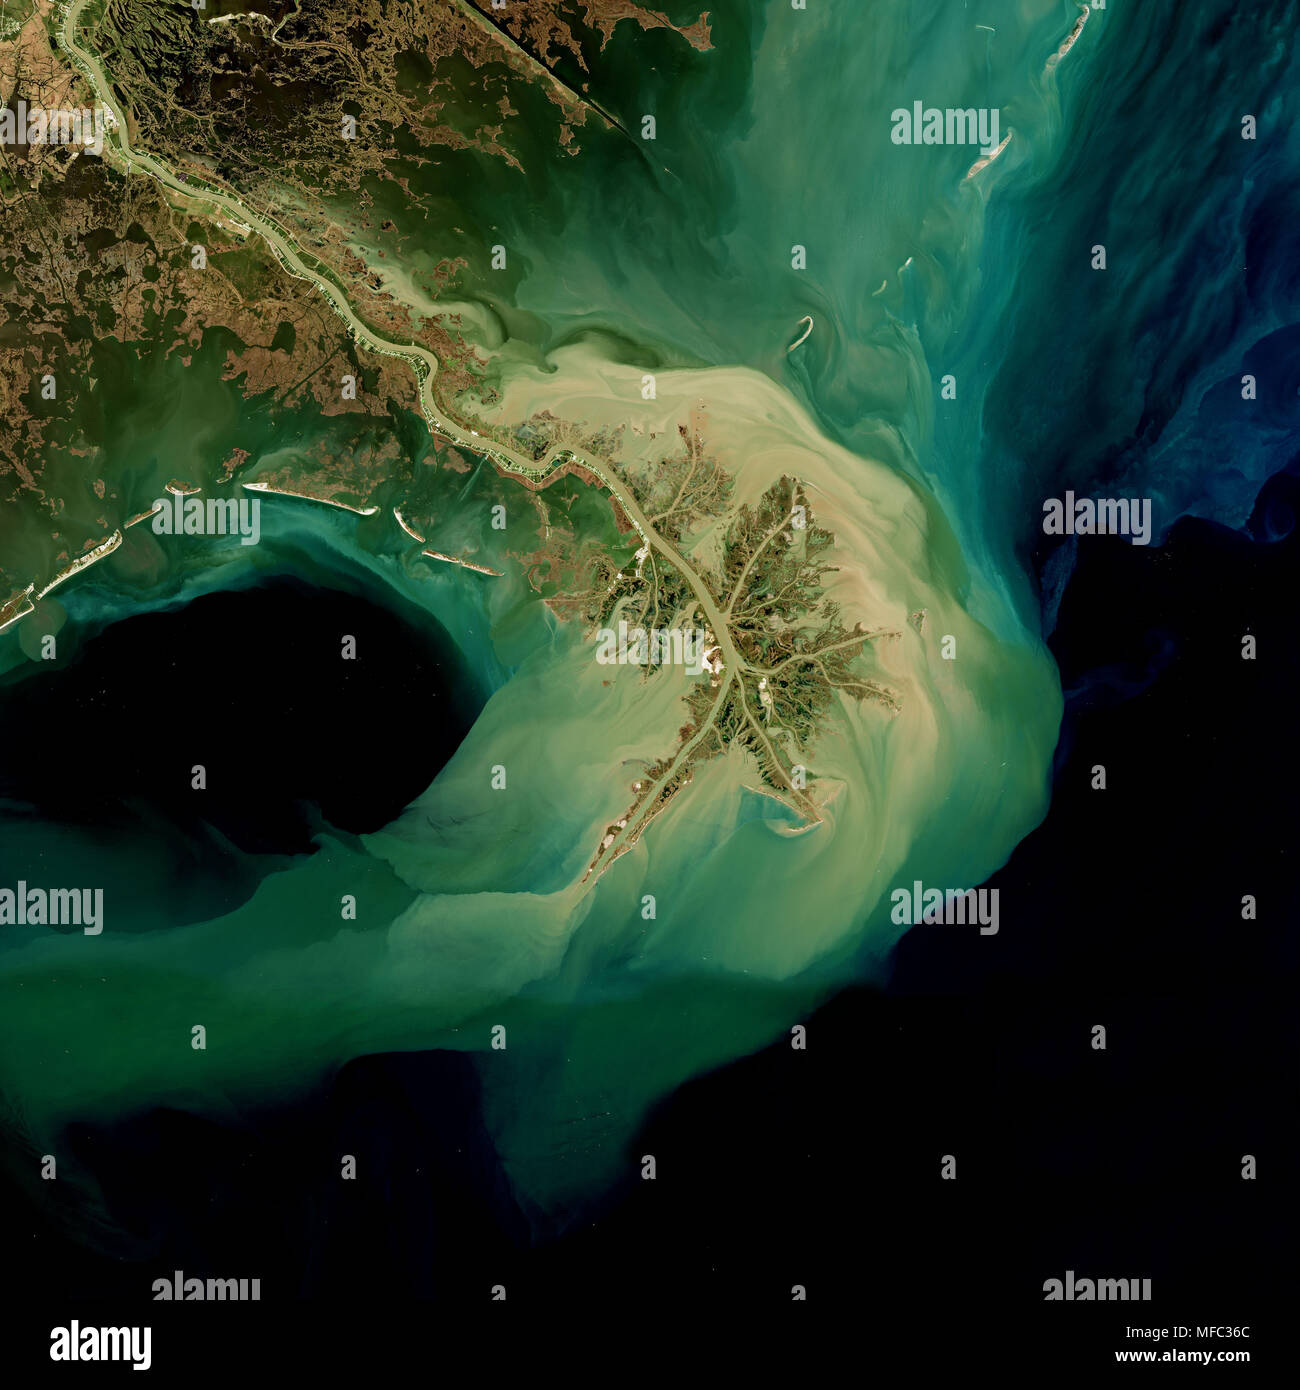 Delta des Mississippi in Louisiana vom Weltraum aus gesehen - Kopernikus Sentinel data enthält der ESA geändert Stockfoto